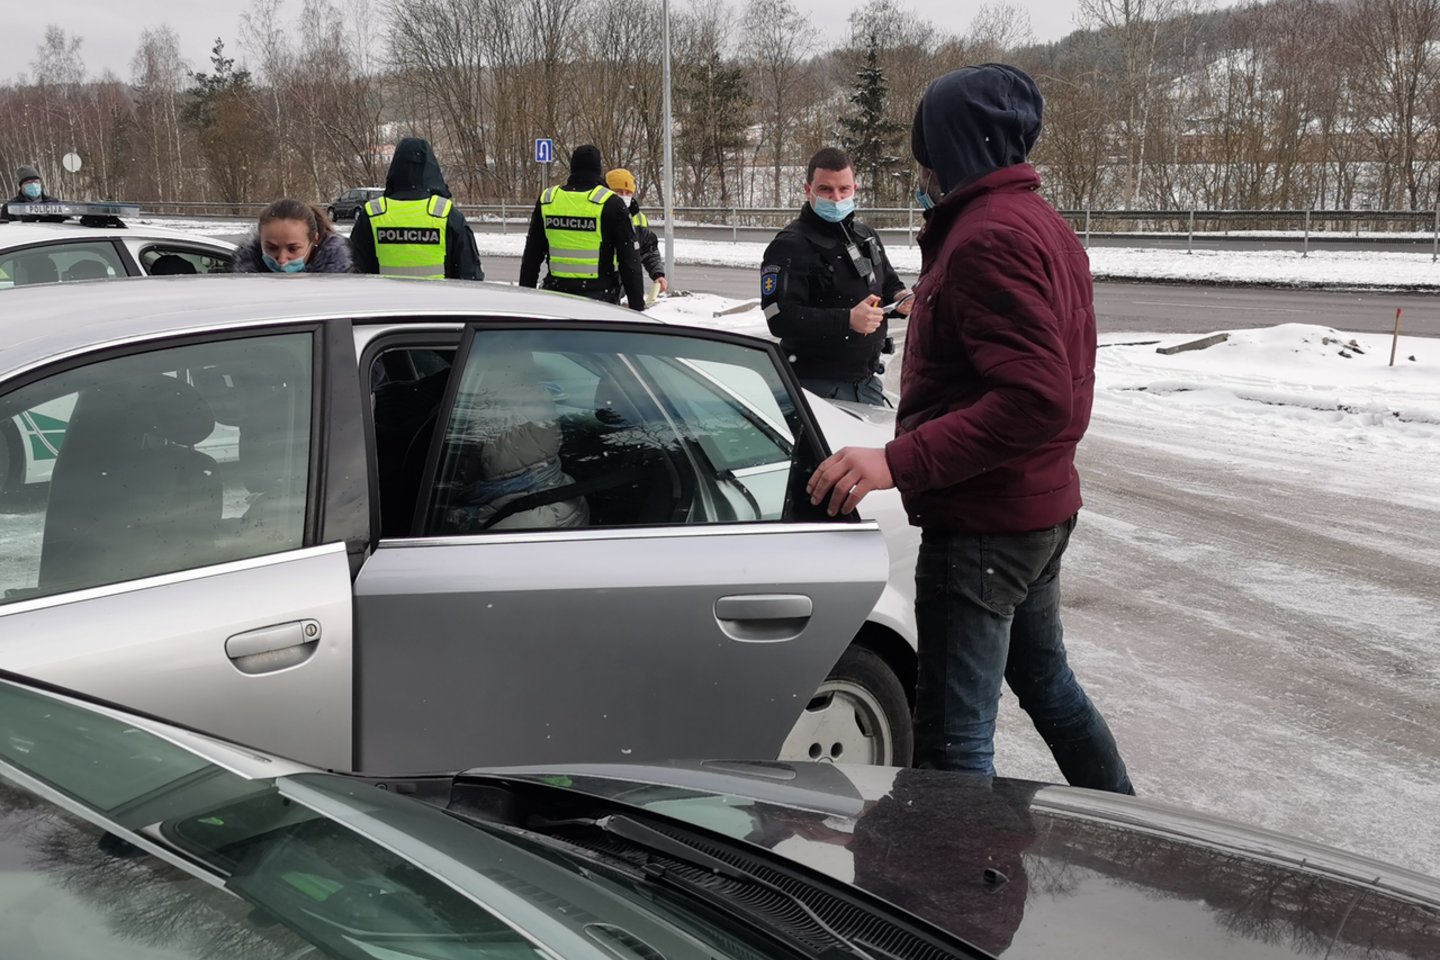  Vilniaus policijos tinkle per reidą šeštadienio rytą suspurdo 8 neblaivūs kelių ereliai. Iš viso buvo patikrinti kelli šimtai vairuotojų. <br> T.Bauro nuotr.